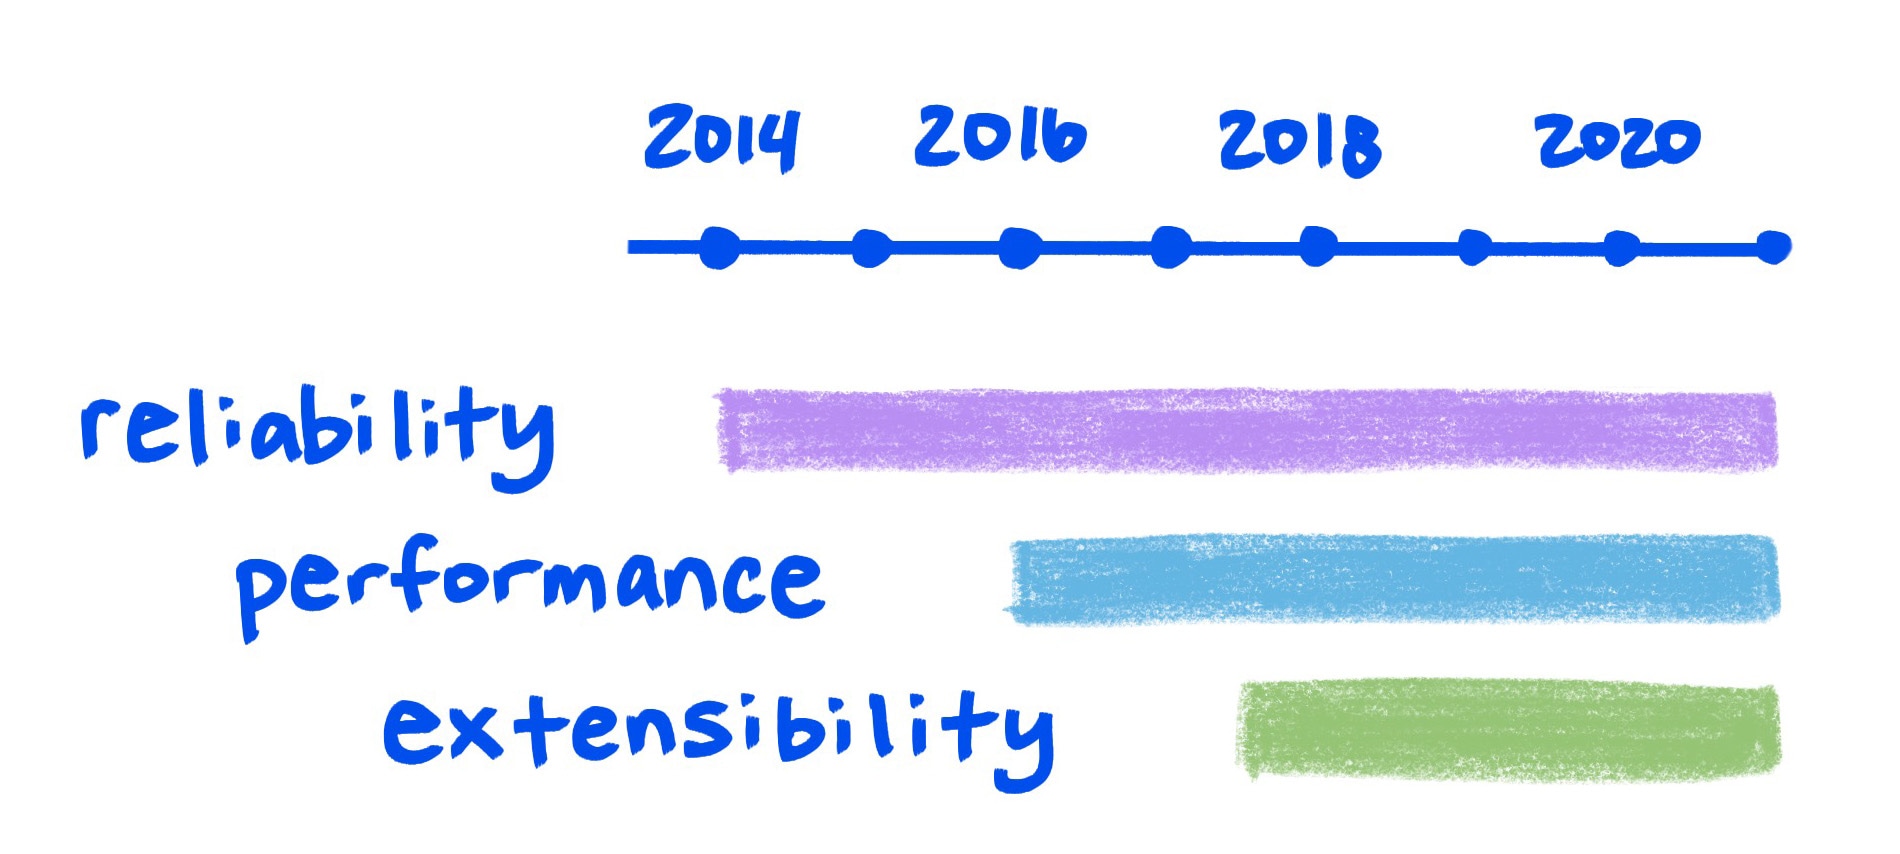 草圖顯示可靠性、效能和擴充性持續提升